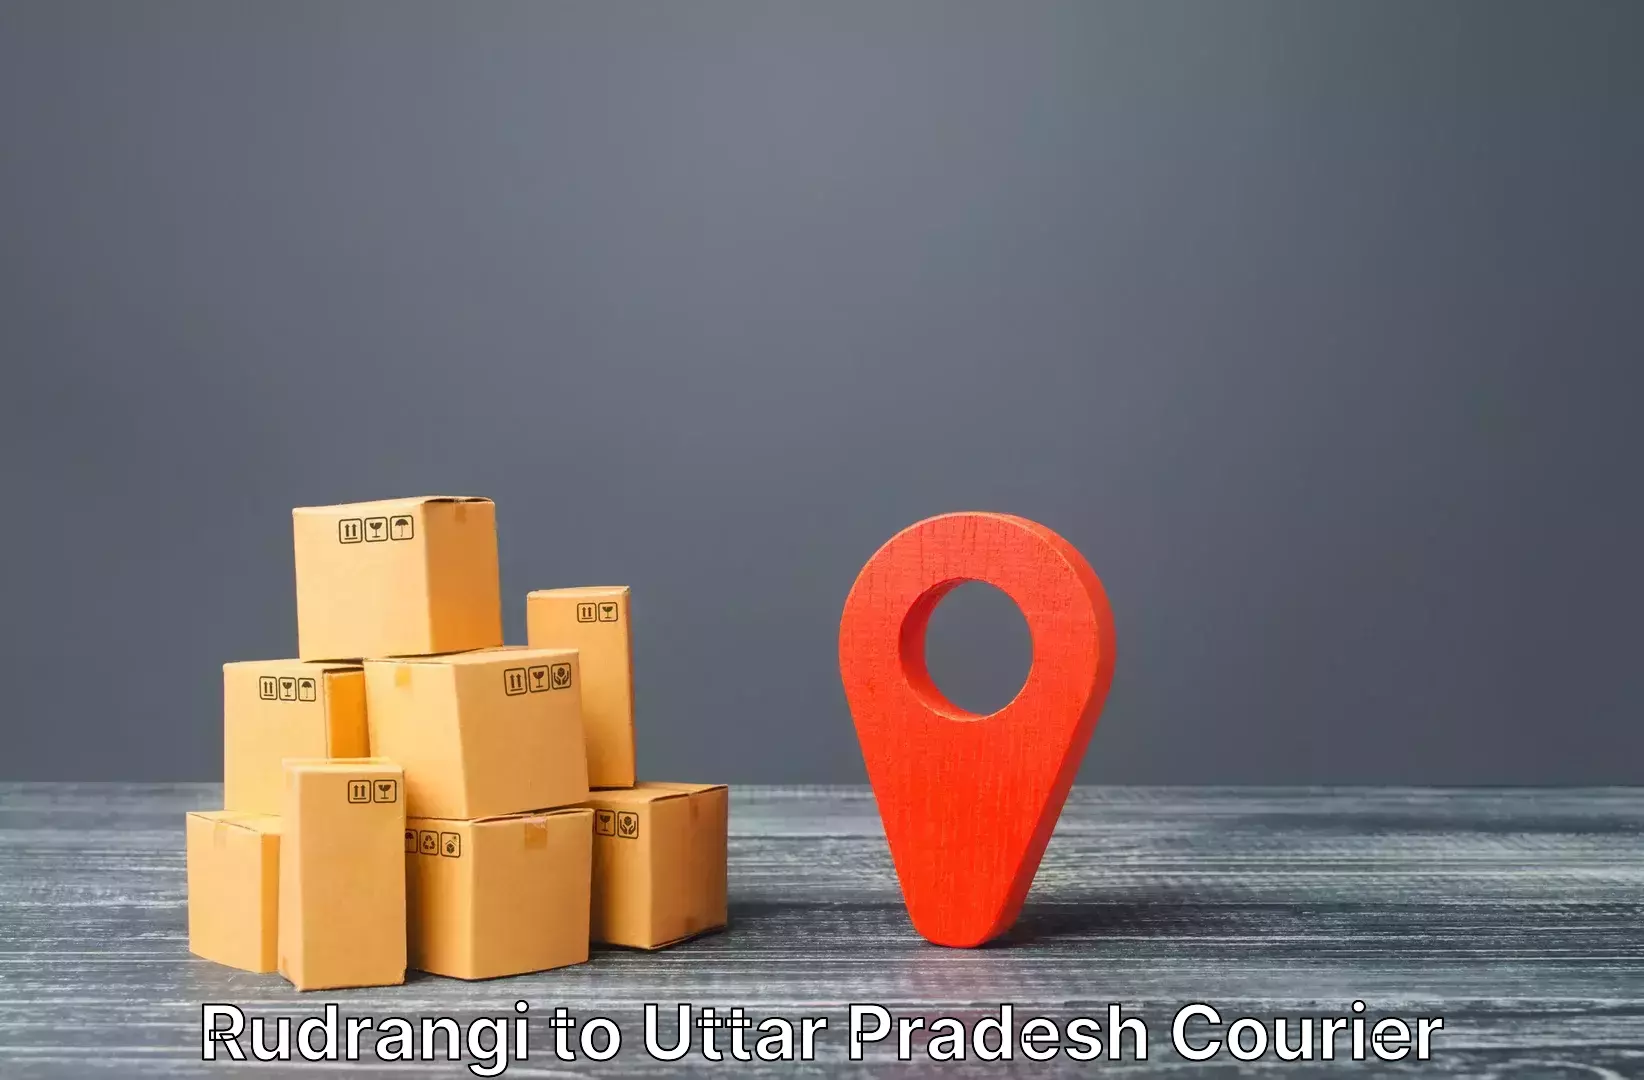 Luggage shipment logistics Rudrangi to Koraon